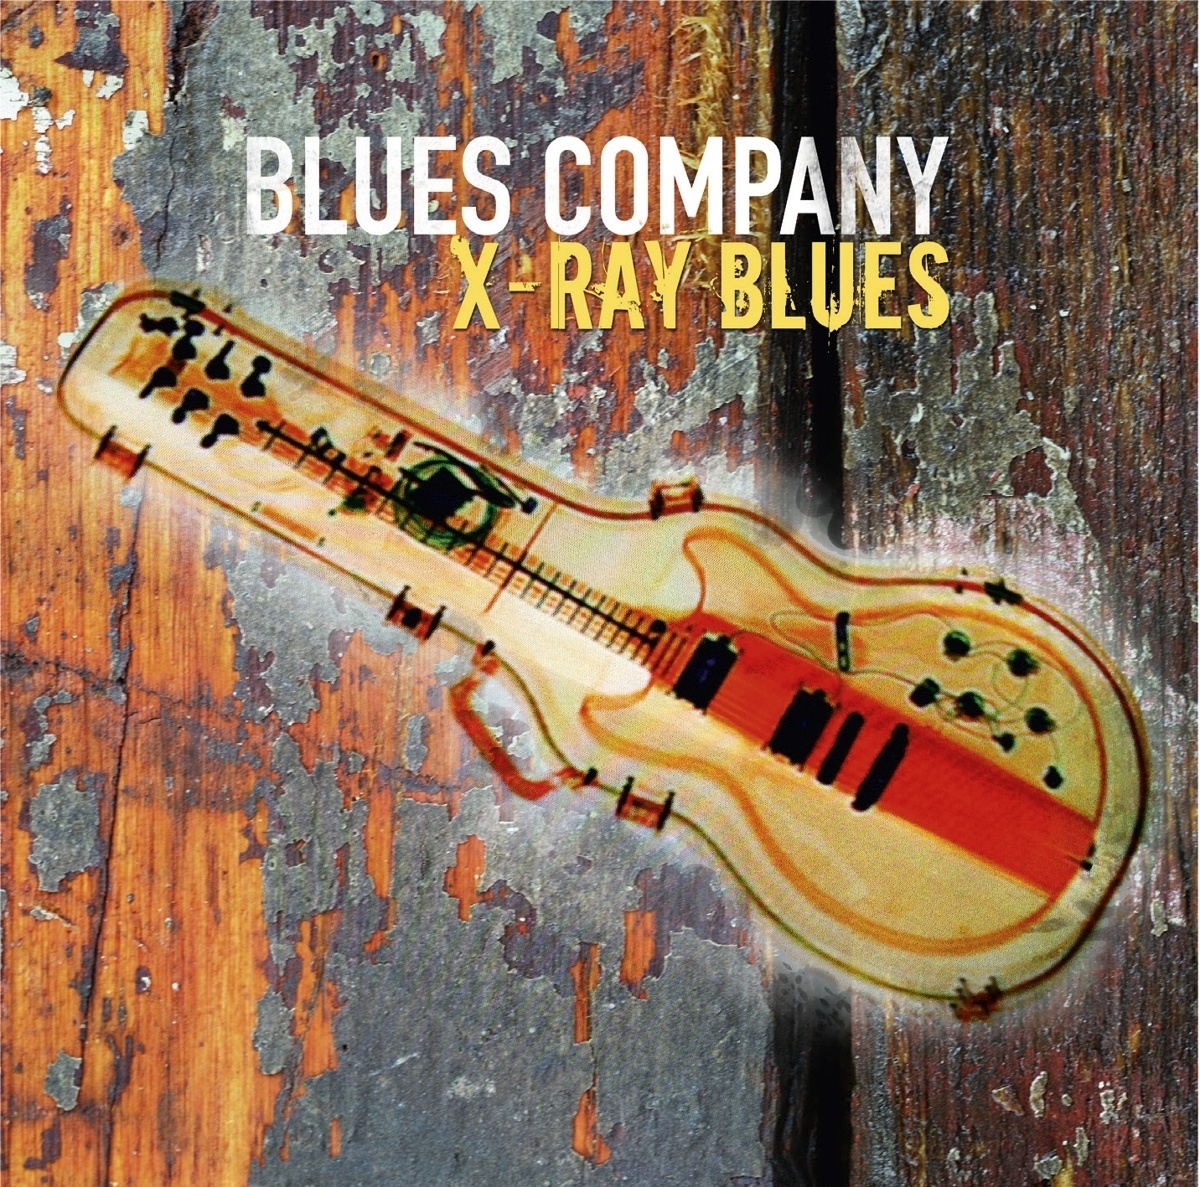 X-Ray Blues - Blues Company. (CD)